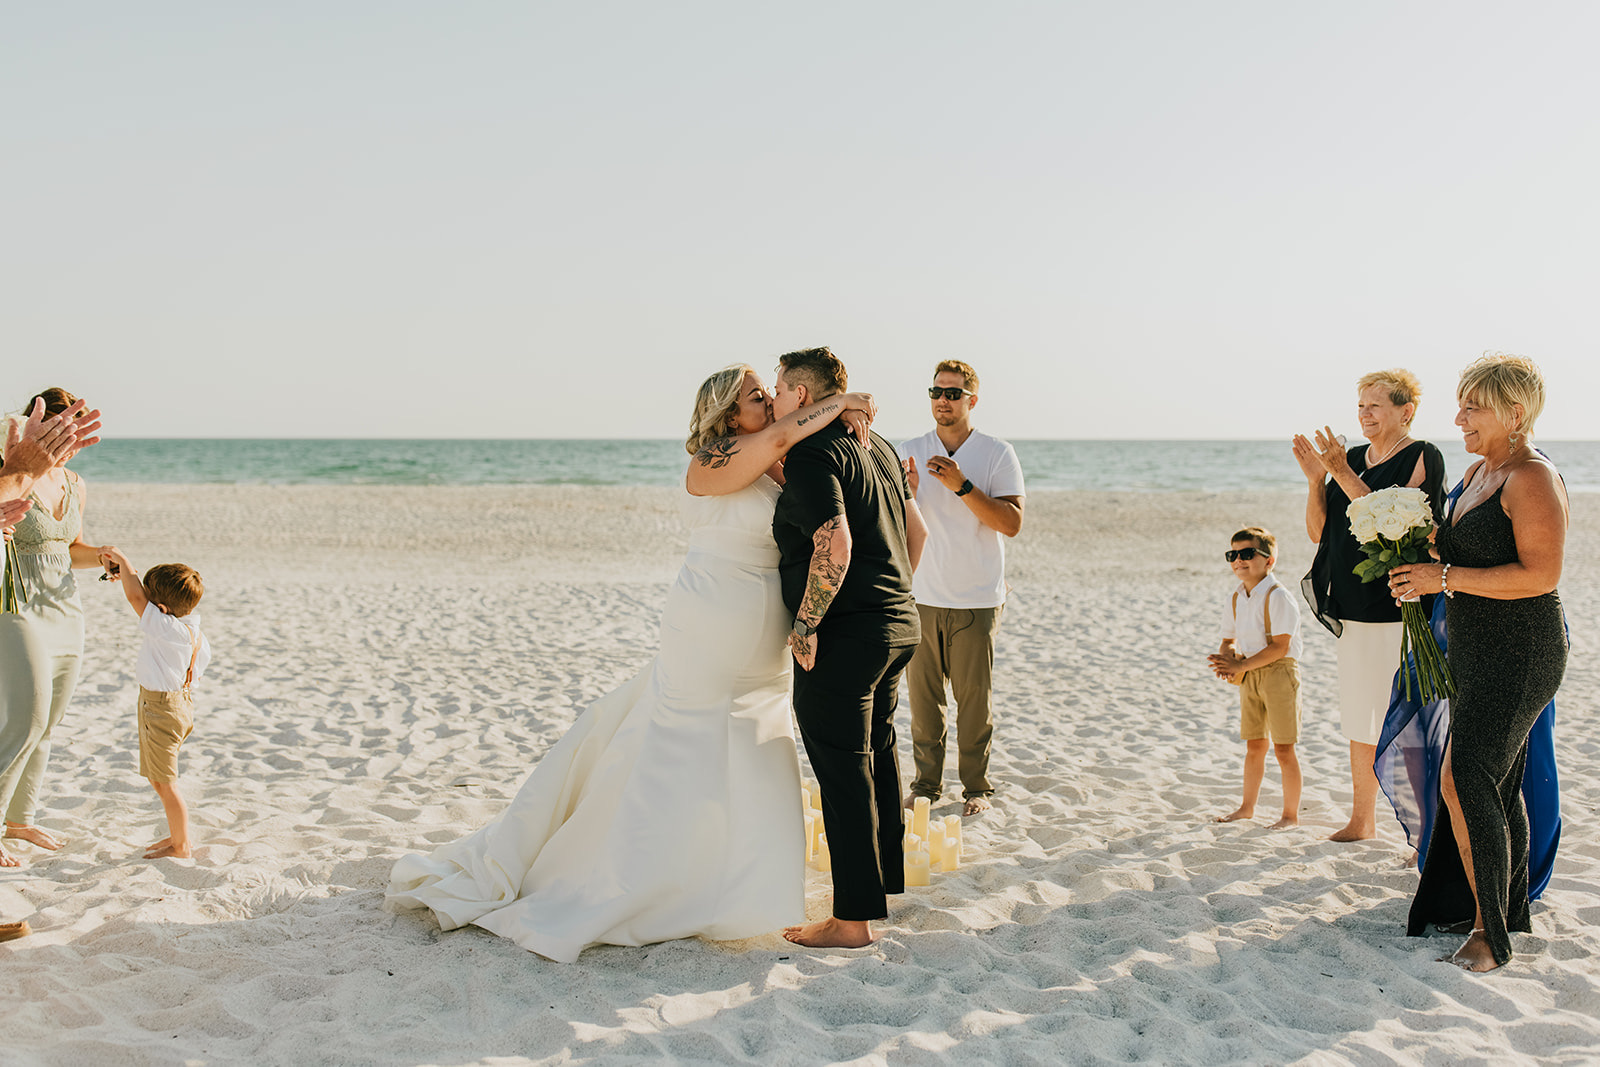 đám cưới trên bãi biển 